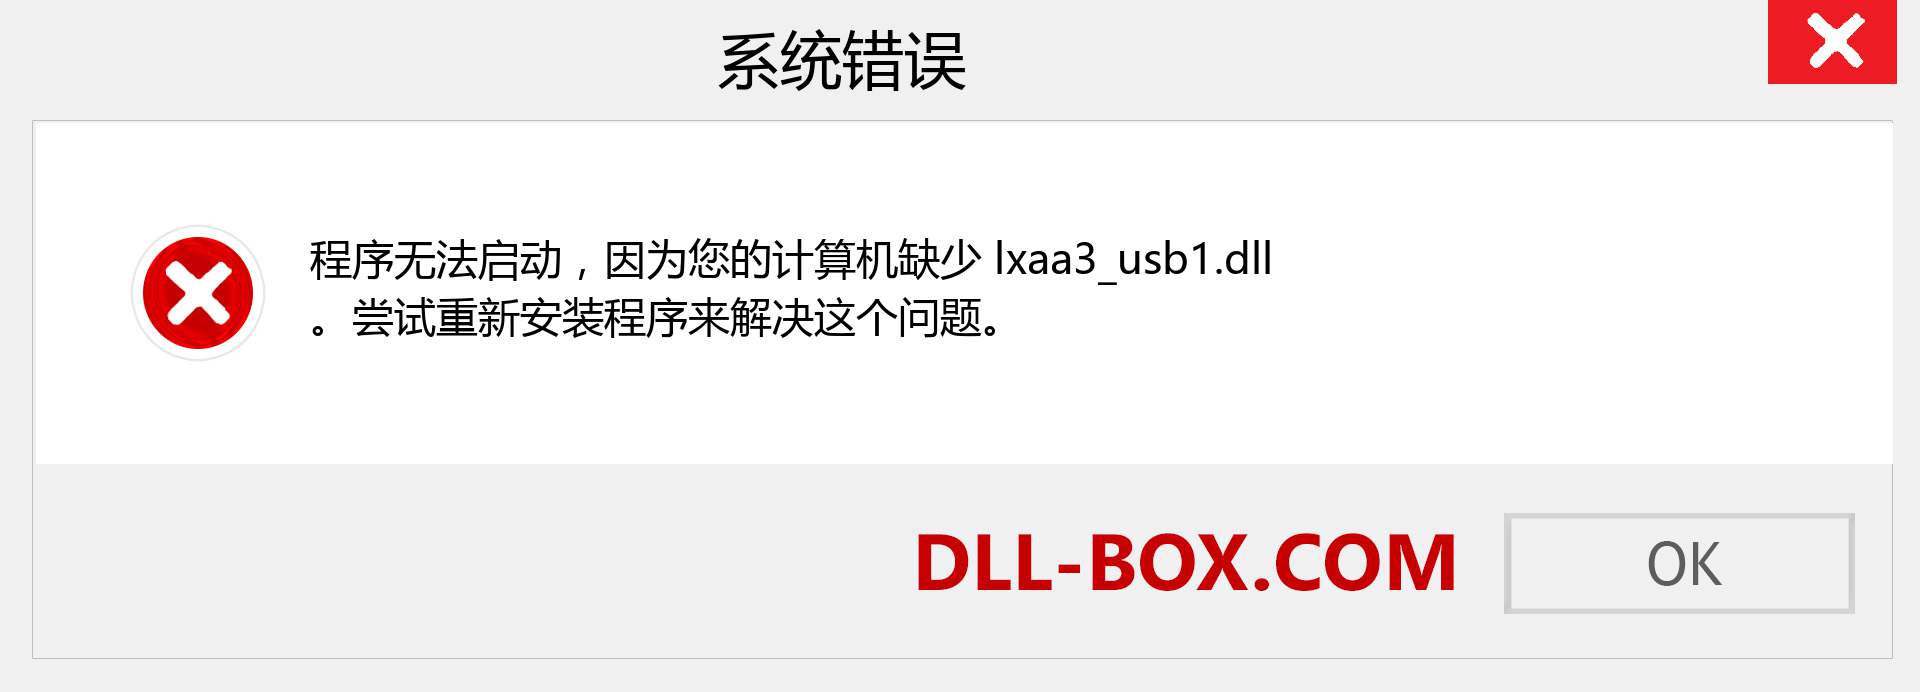 lxaa3_usb1.dll 文件丢失？。 适用于 Windows 7、8、10 的下载 - 修复 Windows、照片、图像上的 lxaa3_usb1 dll 丢失错误